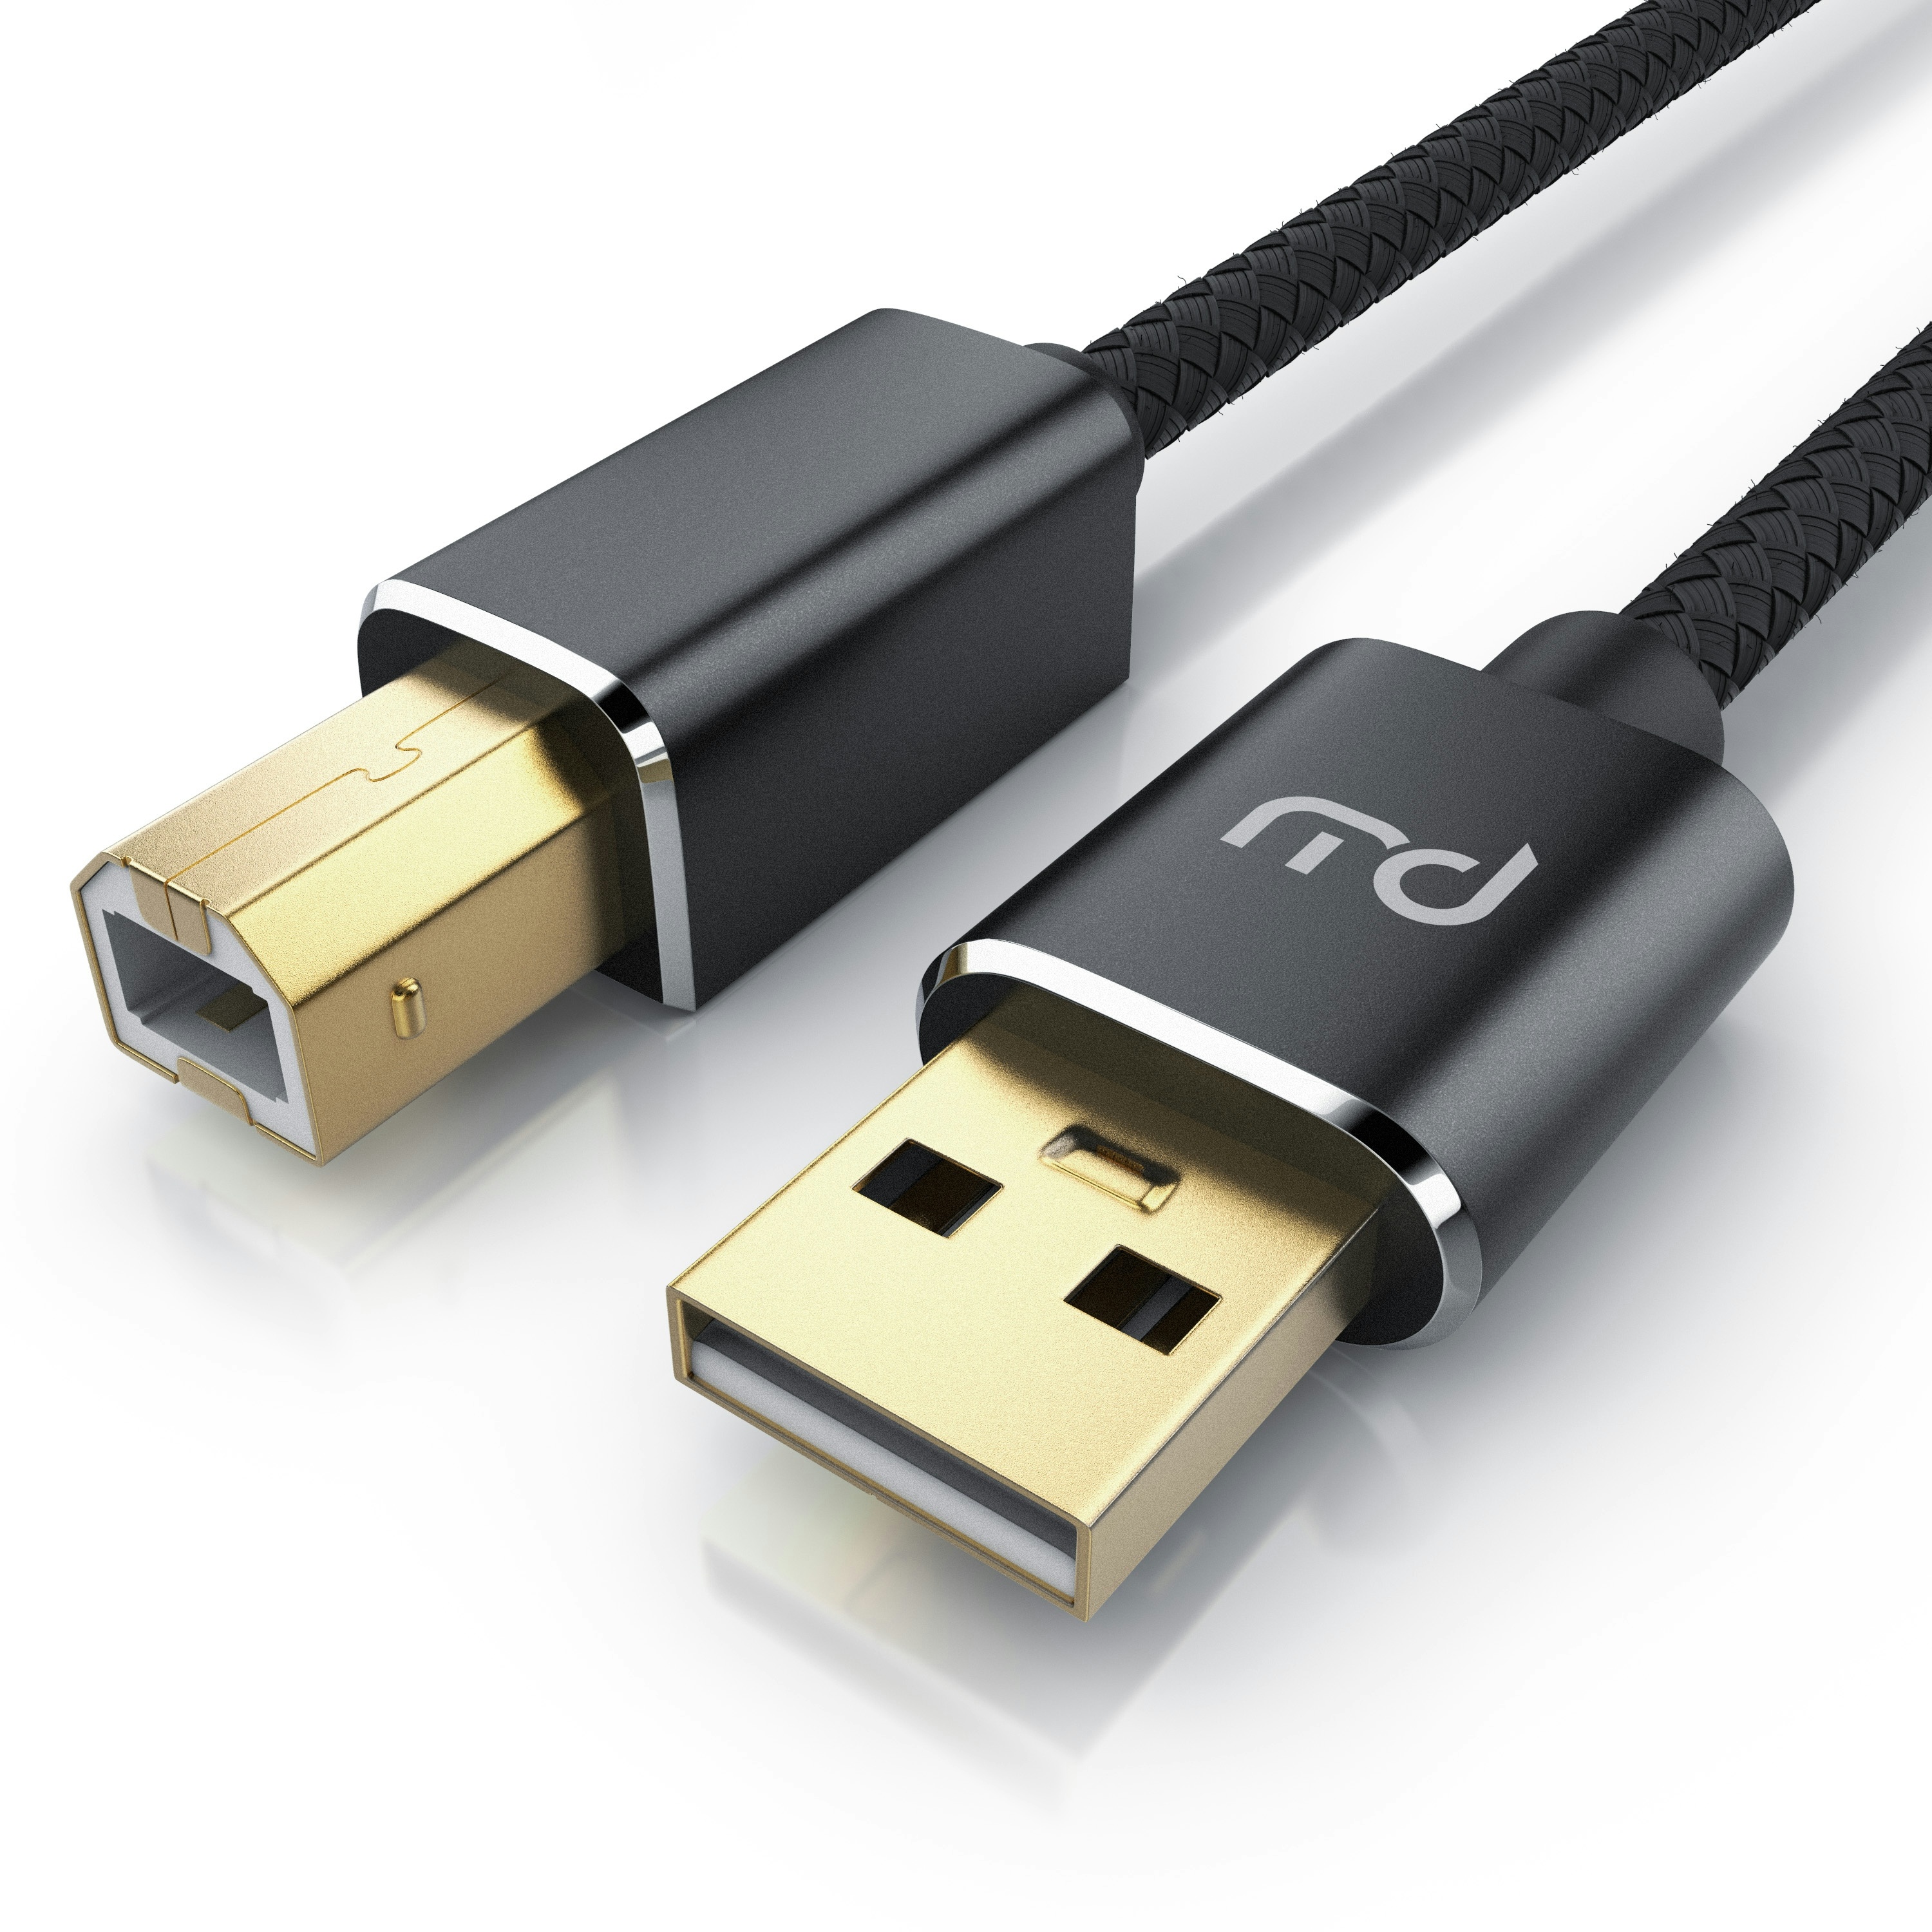 Primewire USB 2.0 Drucker / Scanner Kabel mit Nylonmantel - 1m